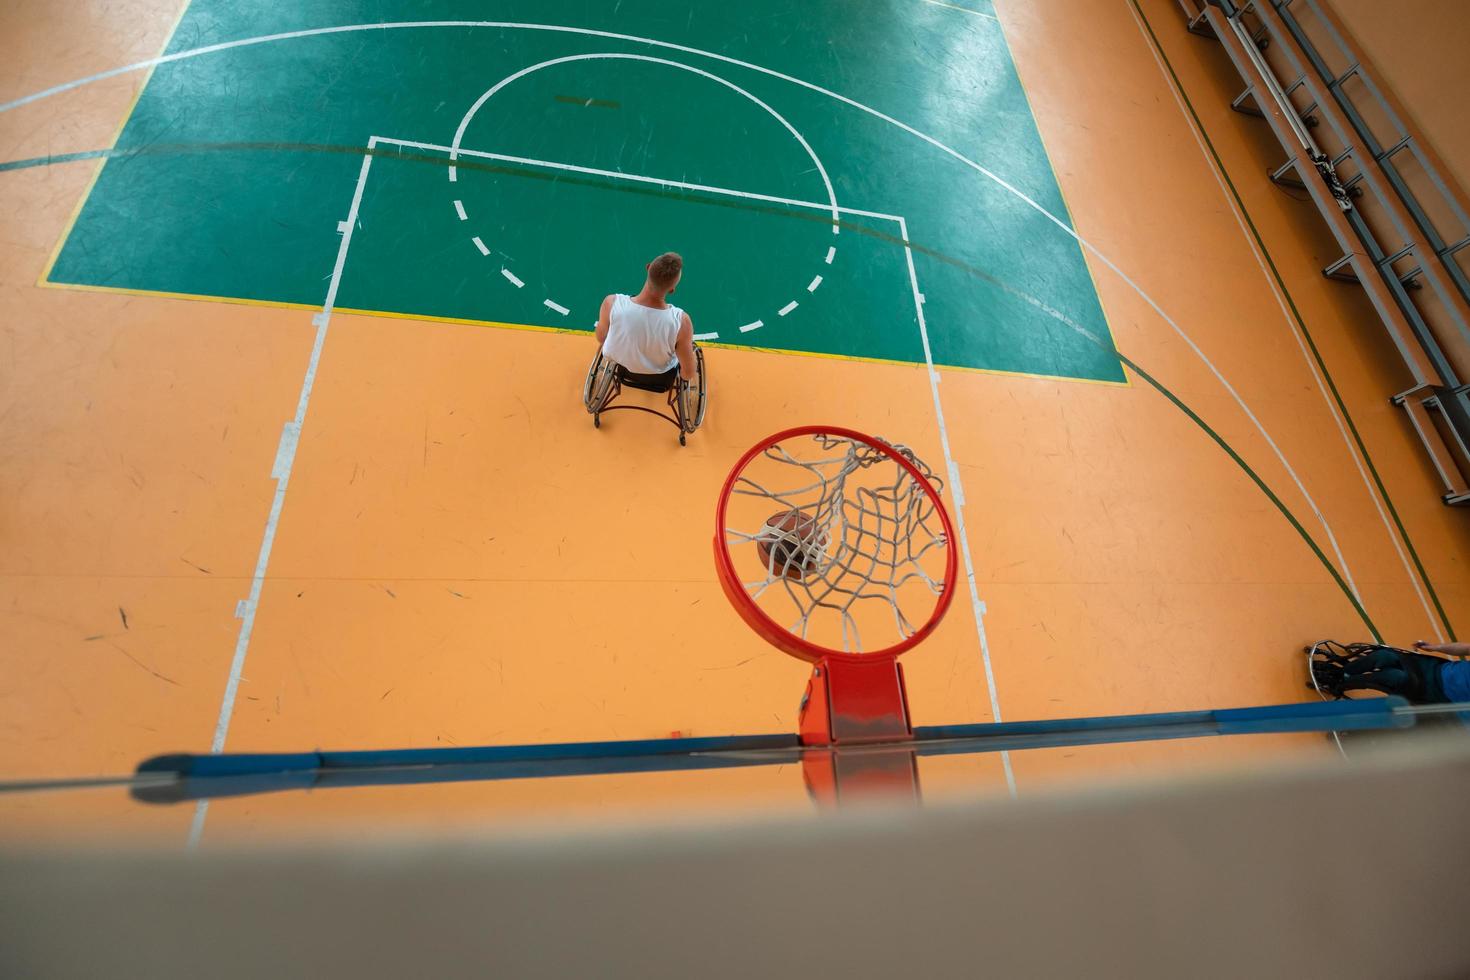 Remolque la foto de un veterano de guerra jugando al baloncesto en un estadio deportivo moderno. el concepto de deporte para personas con discapacidad